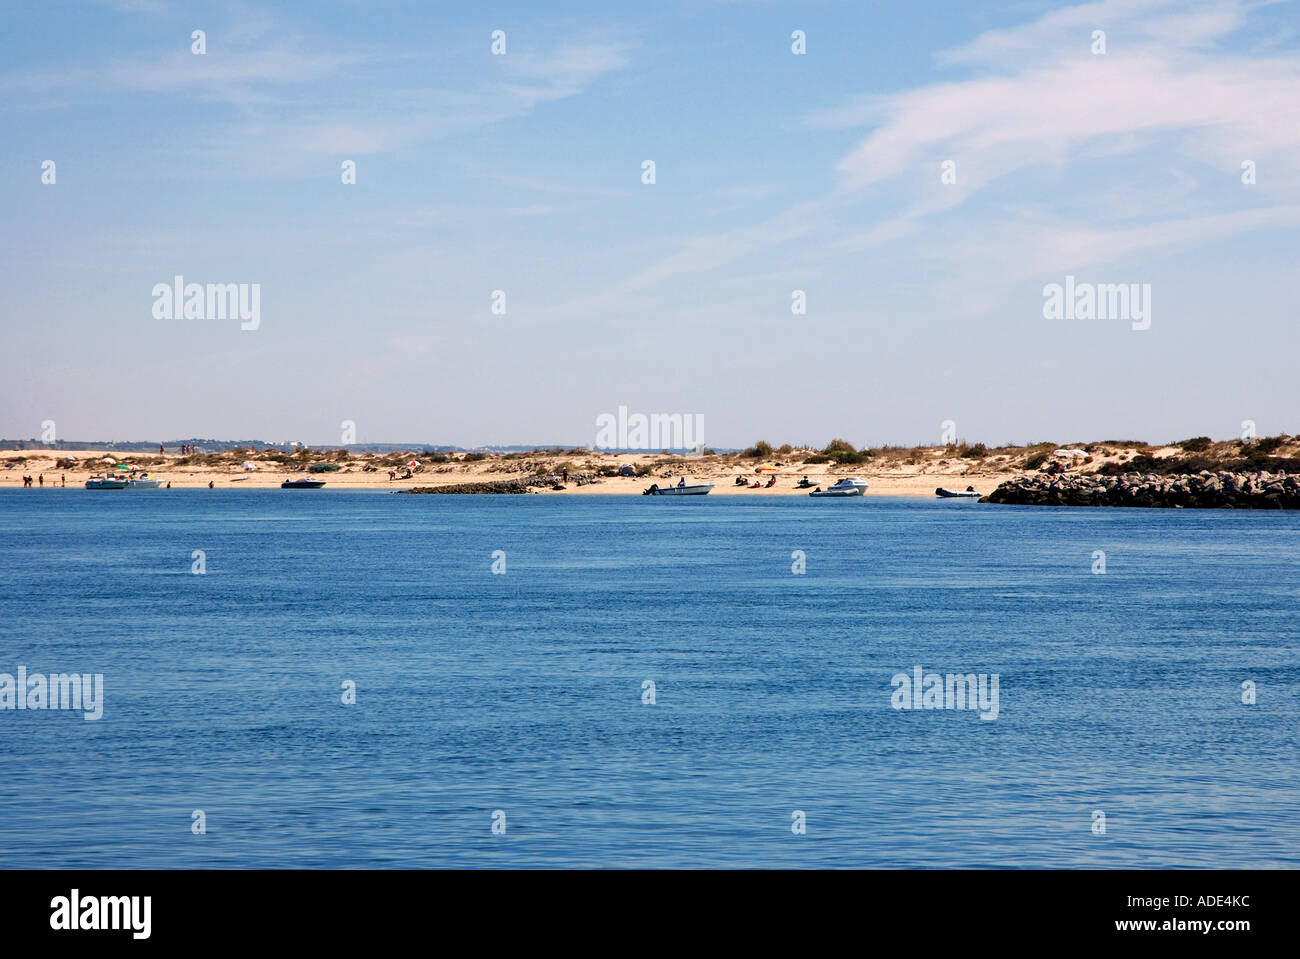 Vue panoramique sur le front de plage d'Ilha da Tavira Algarve Portugal Île Isle Iberia Europe Banque D'Images